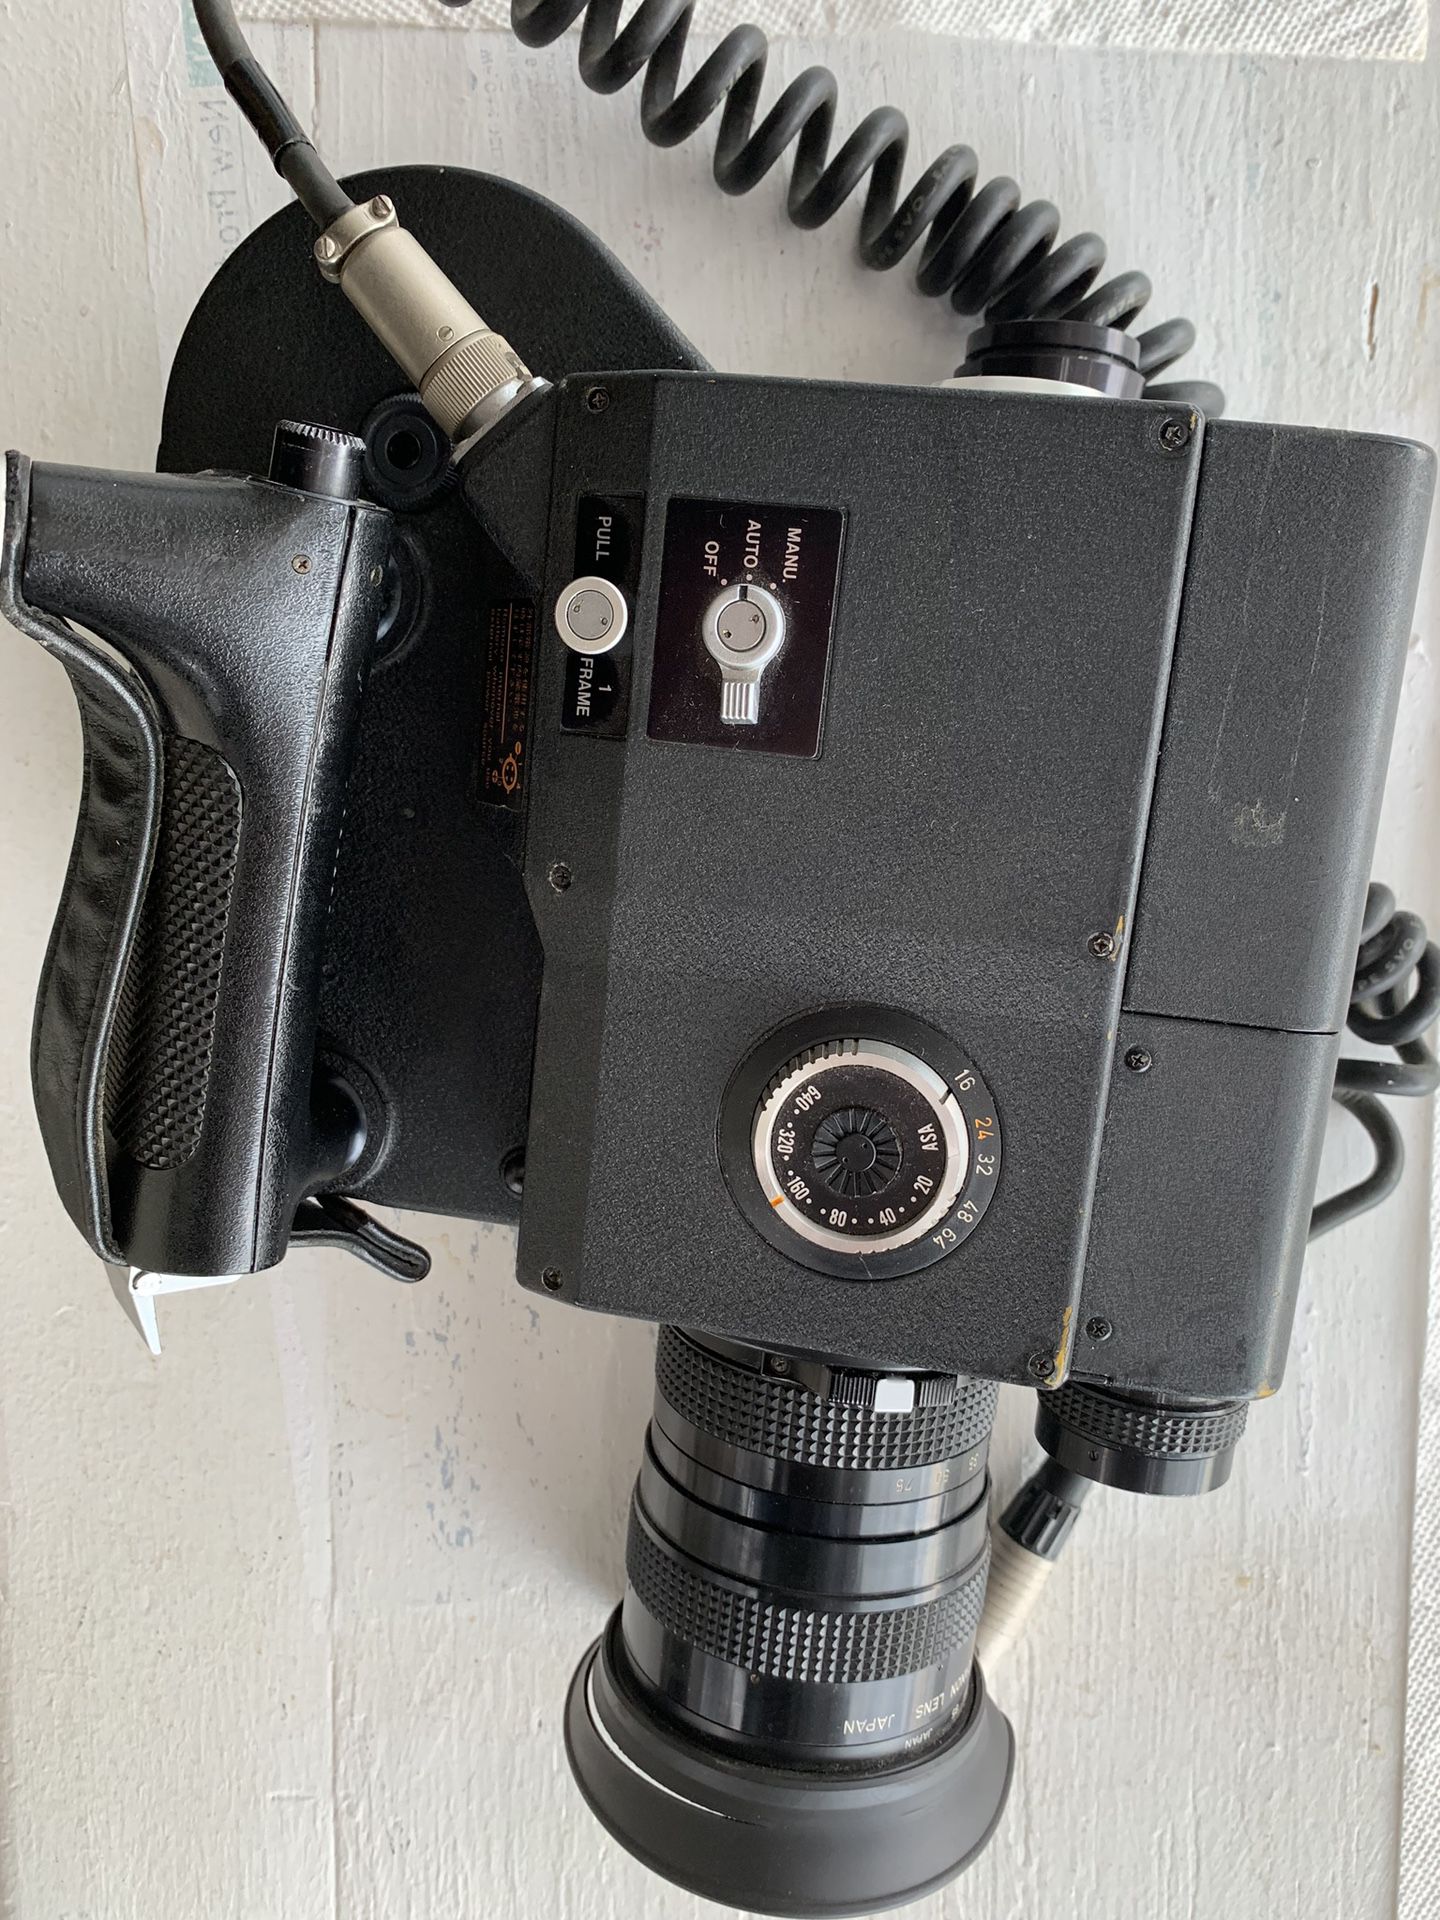 Canon 16 mm film camera